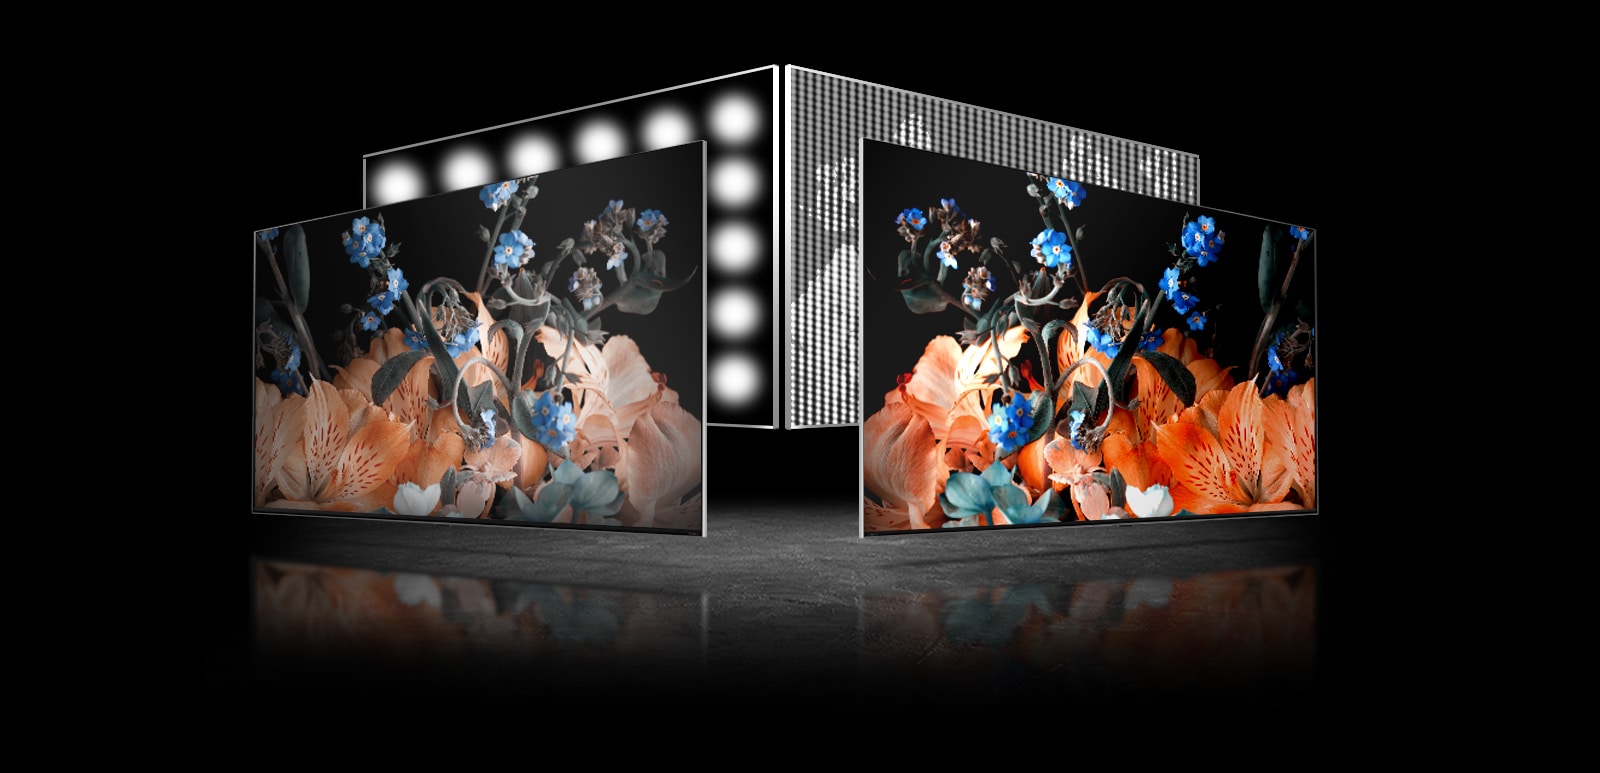 Dva su ekrana – jedan s lijeve strane, drugi s desne. Na svakom televizoru nalaze se iste slike šarenog kristala. Slika s lijeve strane je malo blijeda, dok je slika s desne strane jako živopisna. U lijevom donjem kutu televizora na desnoj slici nalazi se slika procesorskog čipa.